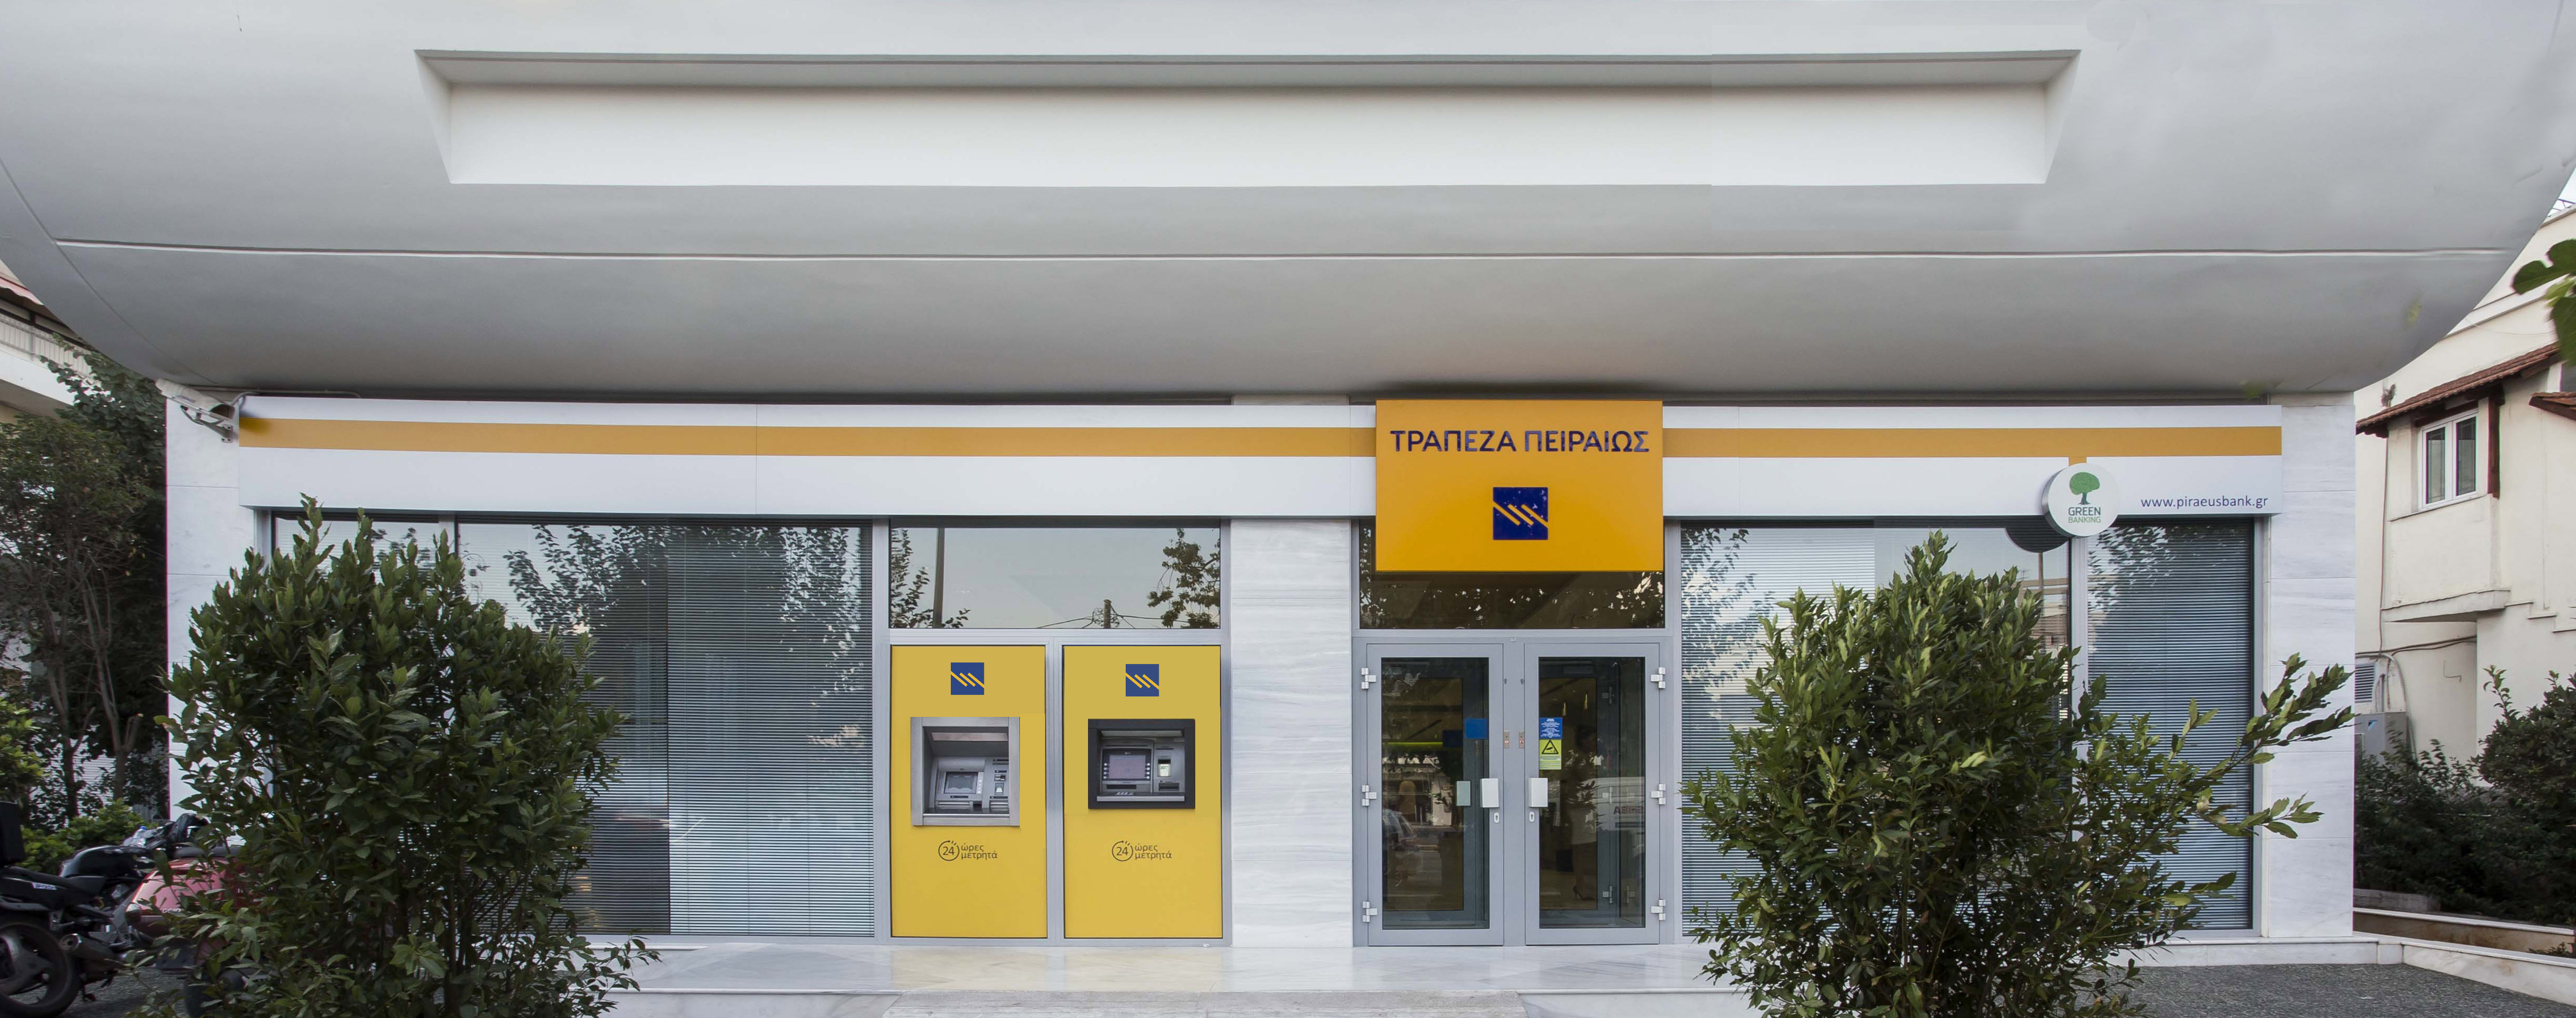 Τράπεζα Πειραιώς: Αντλησε €175 εκατ. από την εγχώρια αγορά